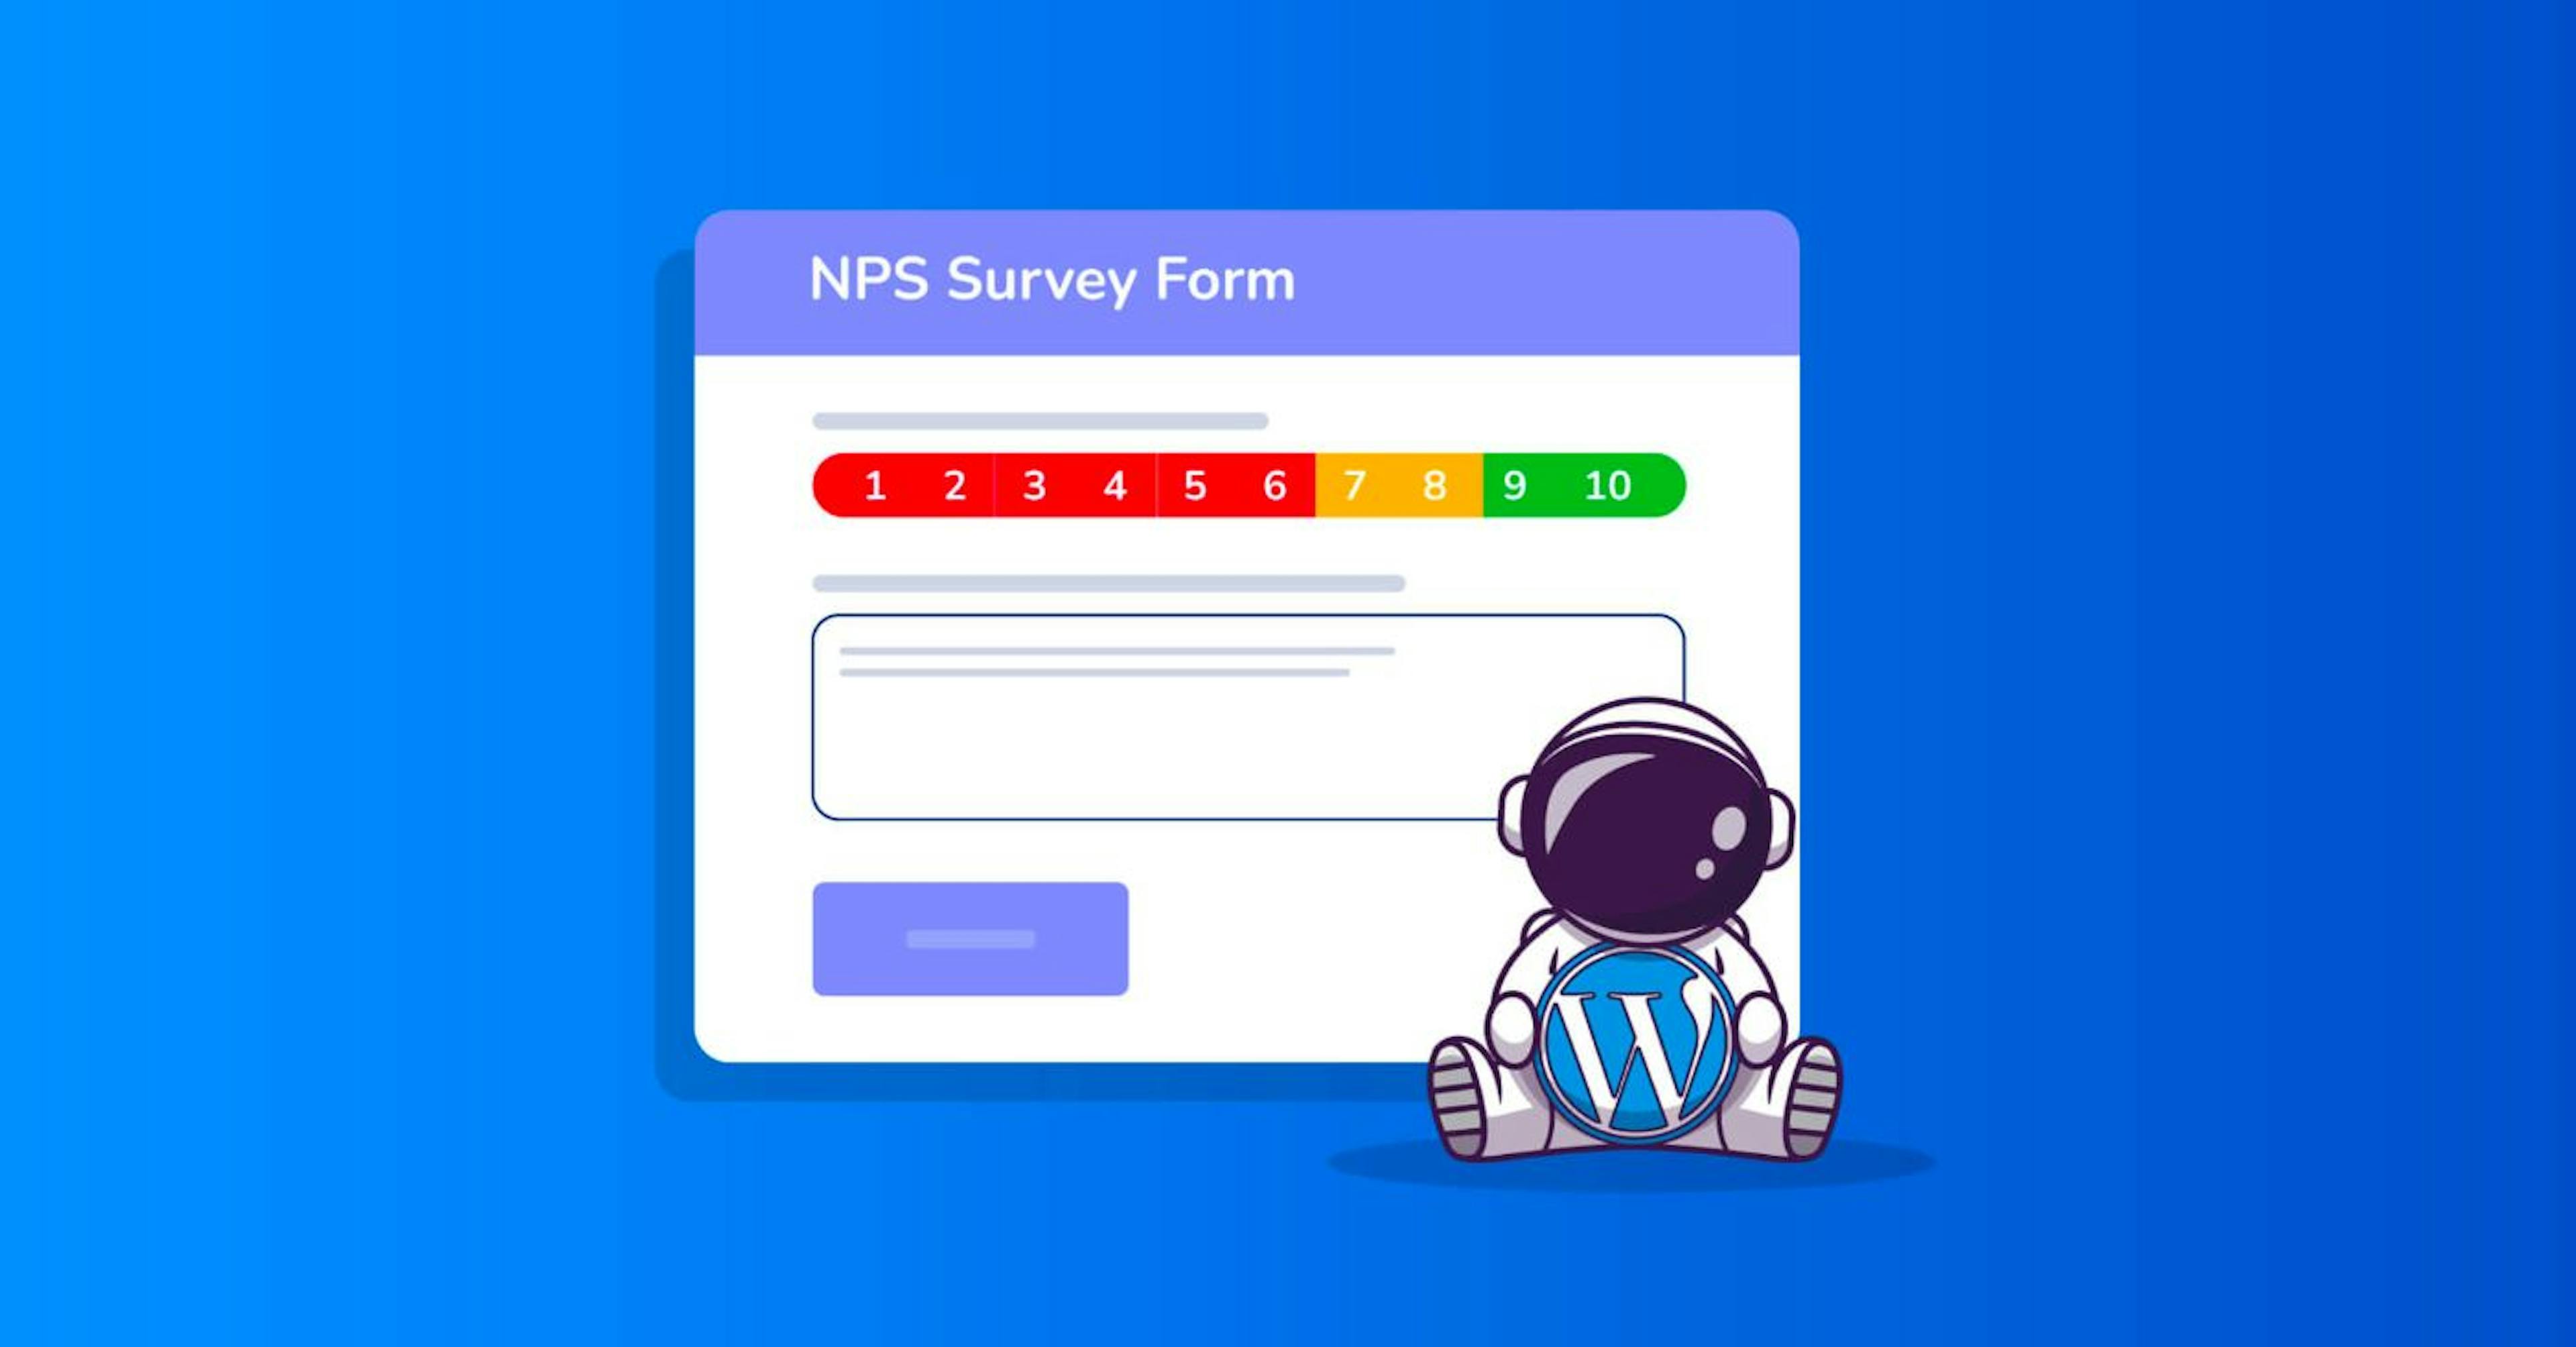 El formulario NPS puede verse así, con una calificación de 0 a 10 y un campo de texto para comentarios o opiniones.